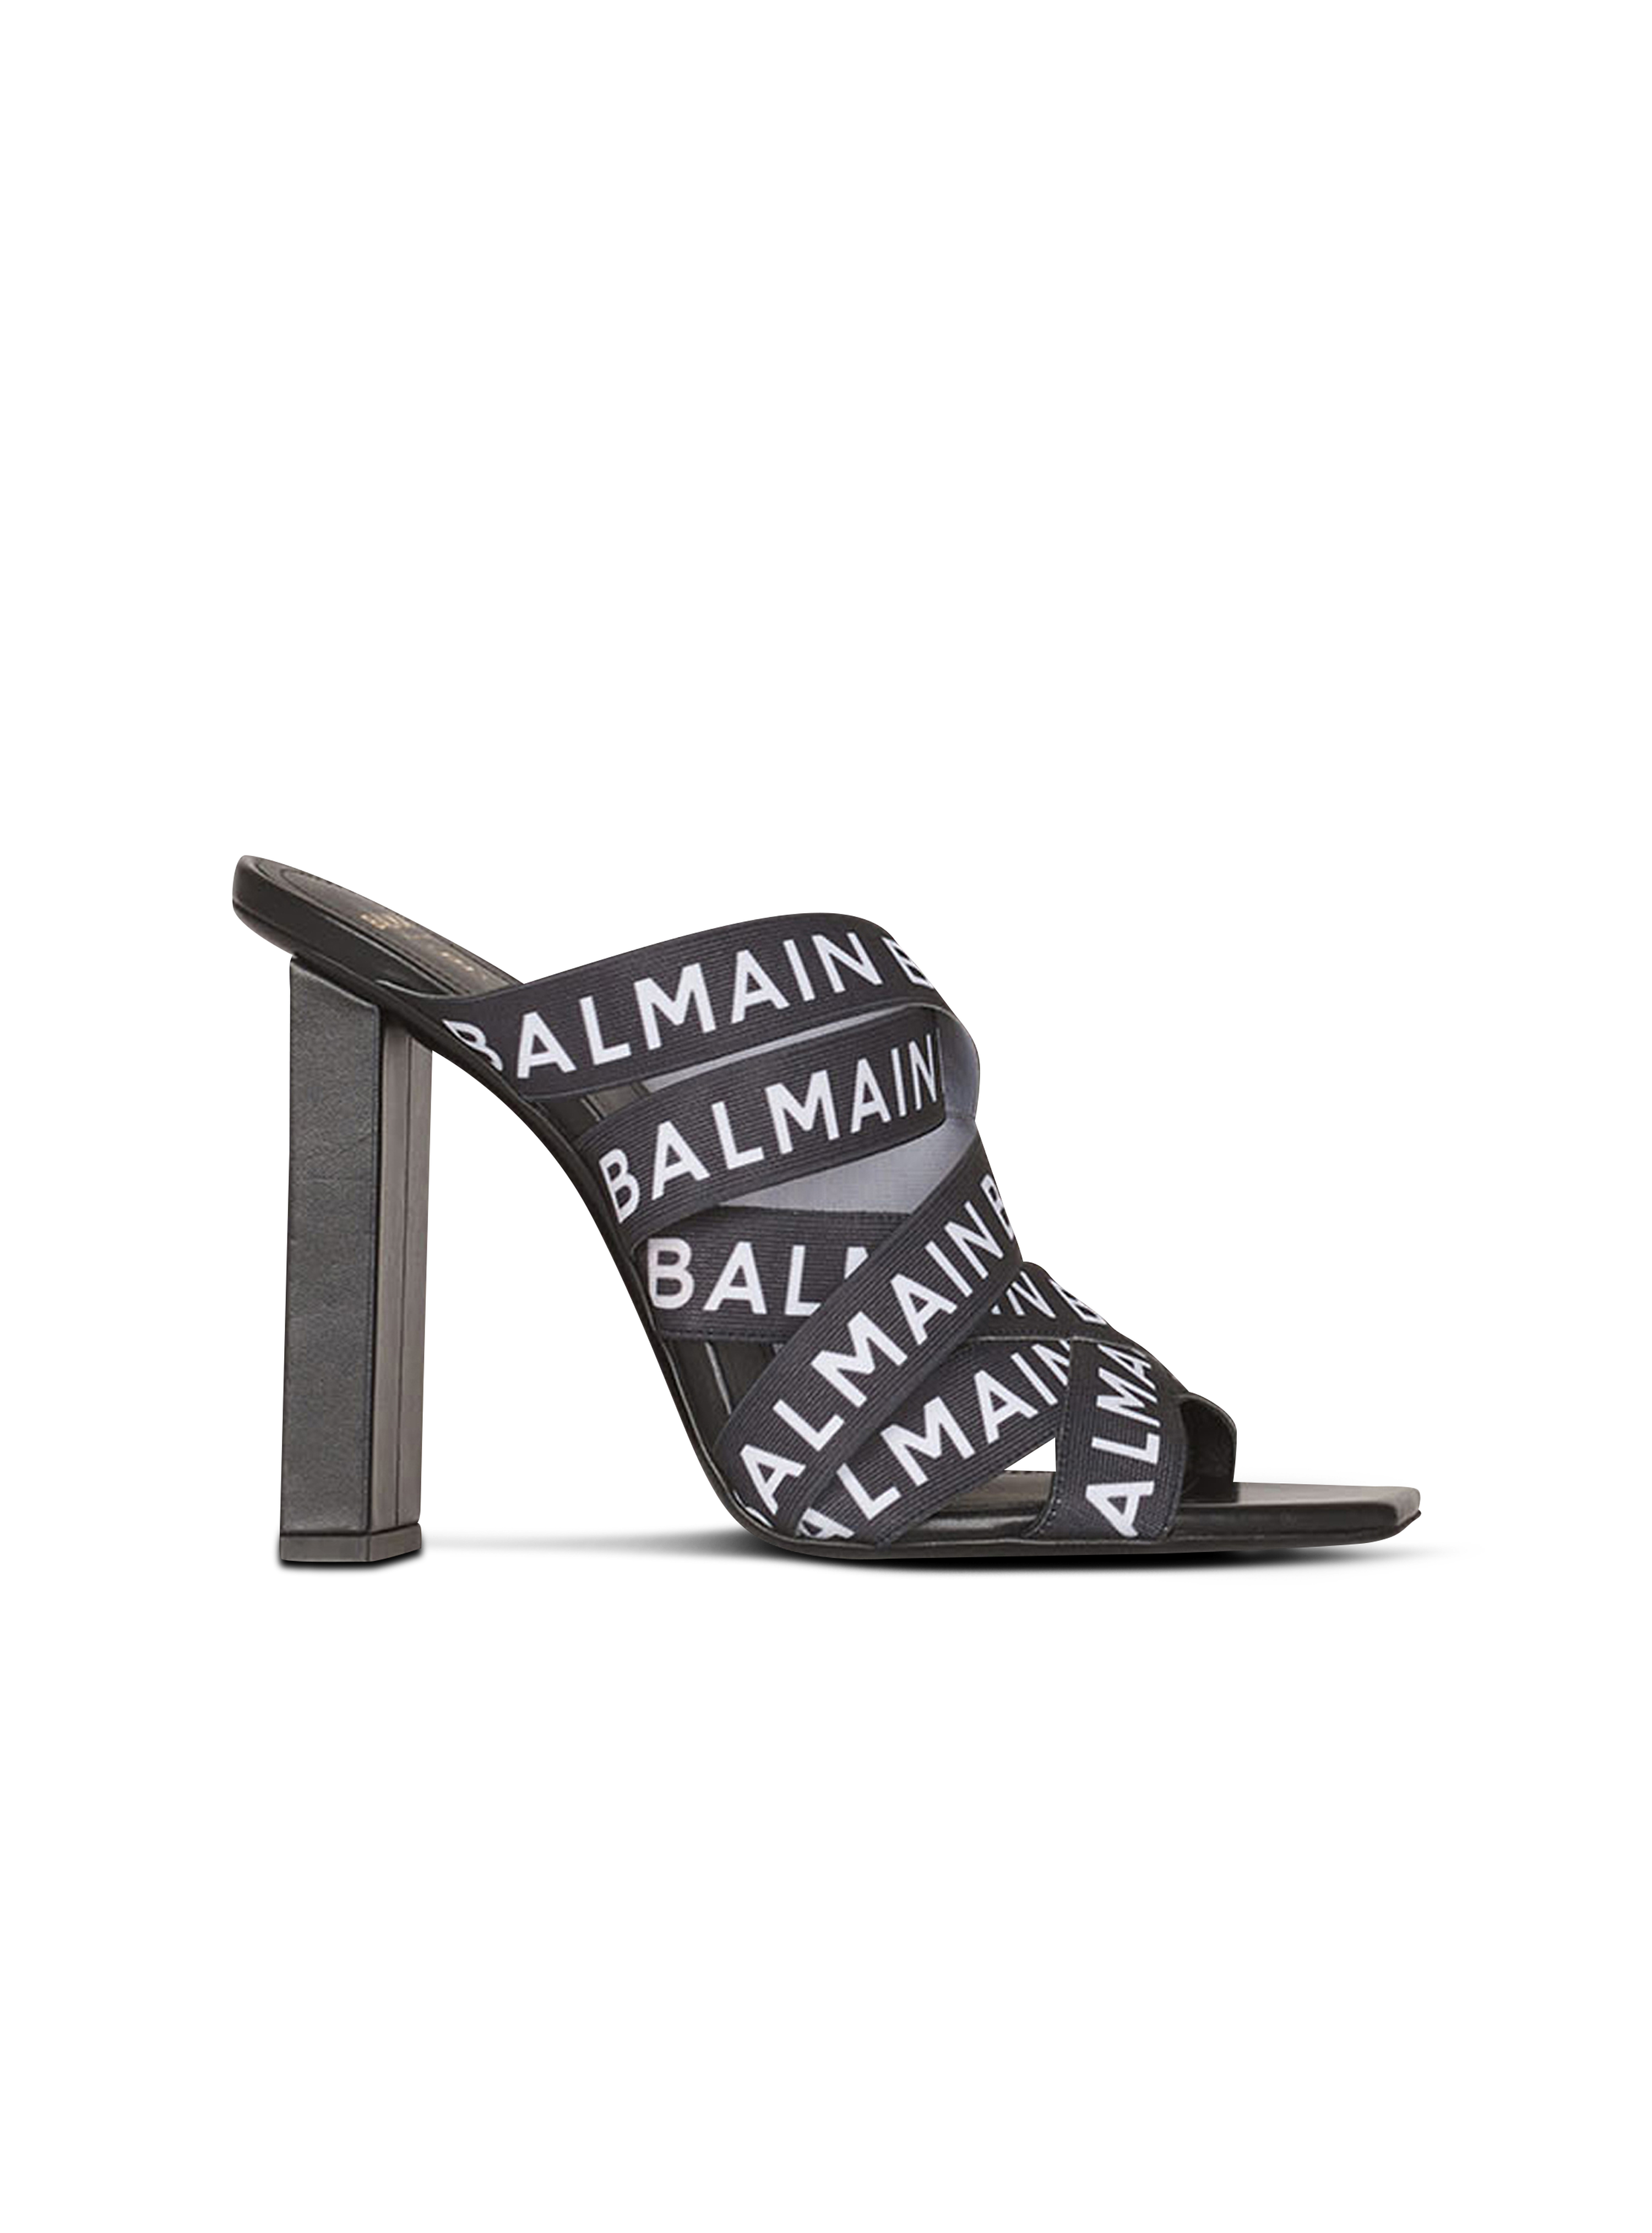 Balmain巴尔曼标志Union凉鞋, black